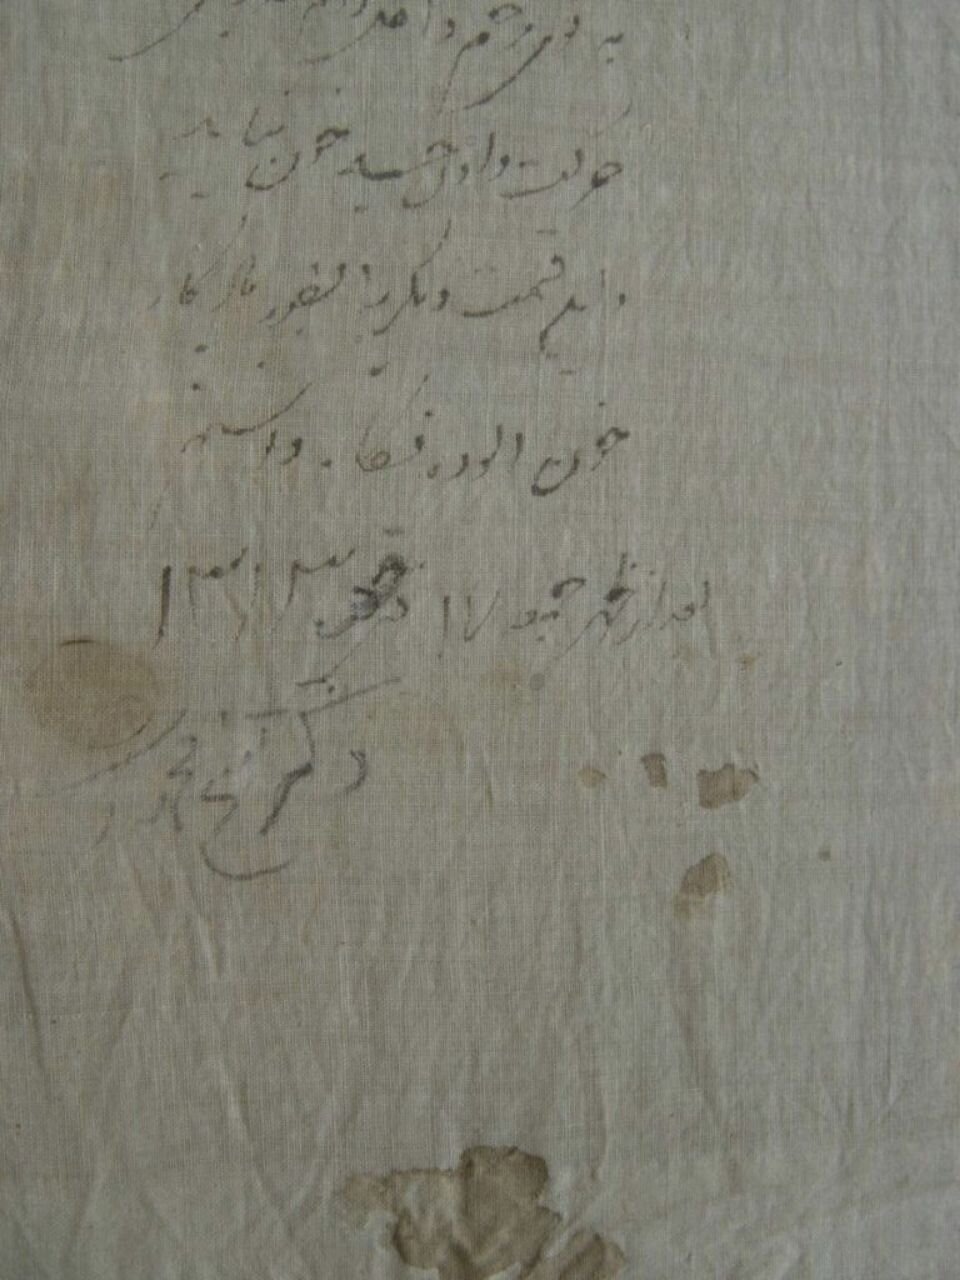 نوشته «یادگاری» پزشک ناصرالدین شاه روی دستمال خونین به جامانده از ترور او + عکس